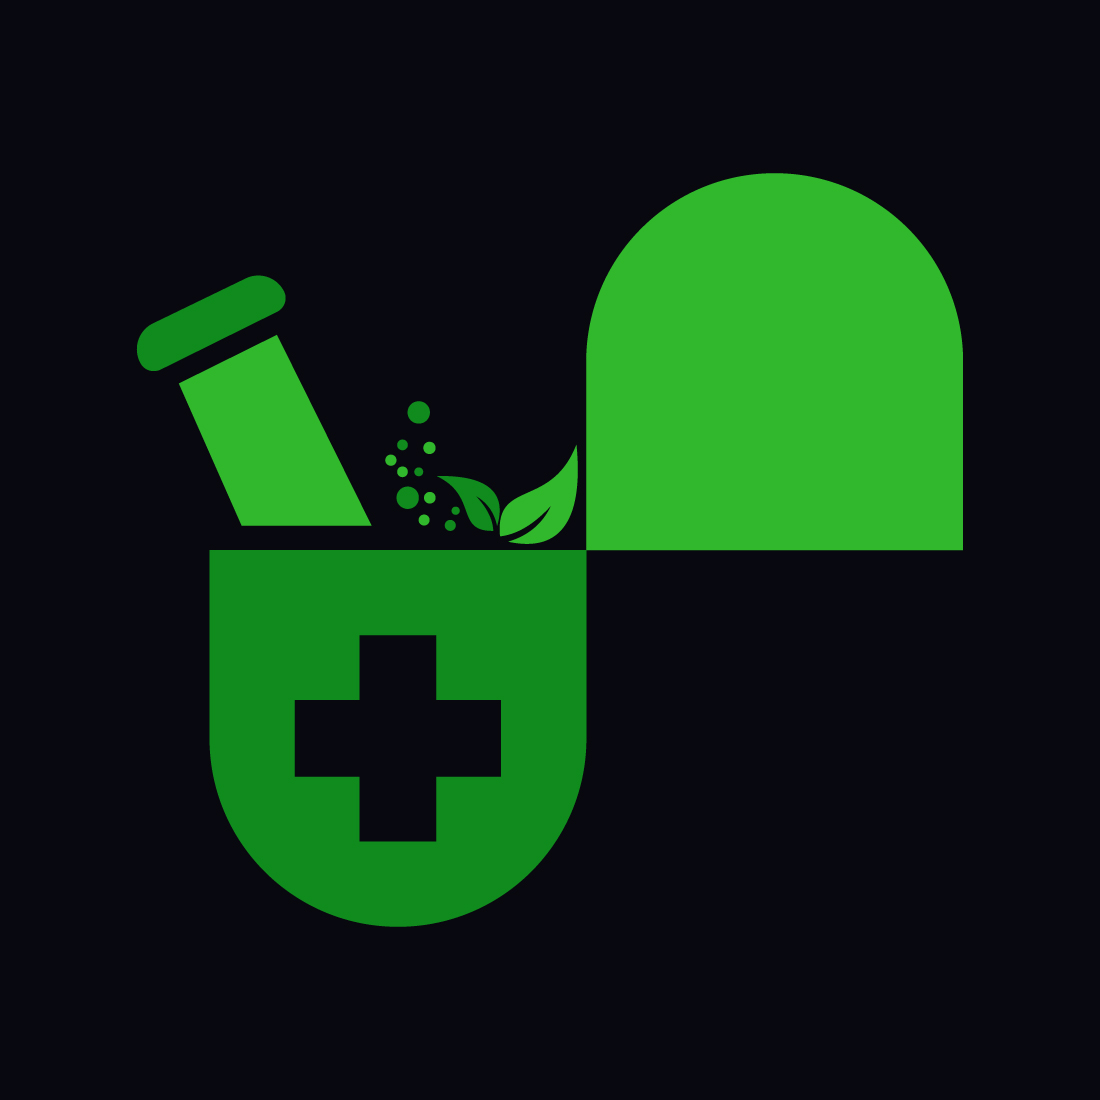 Creative Medical pharmacy logo design, Vector design concept cover image.